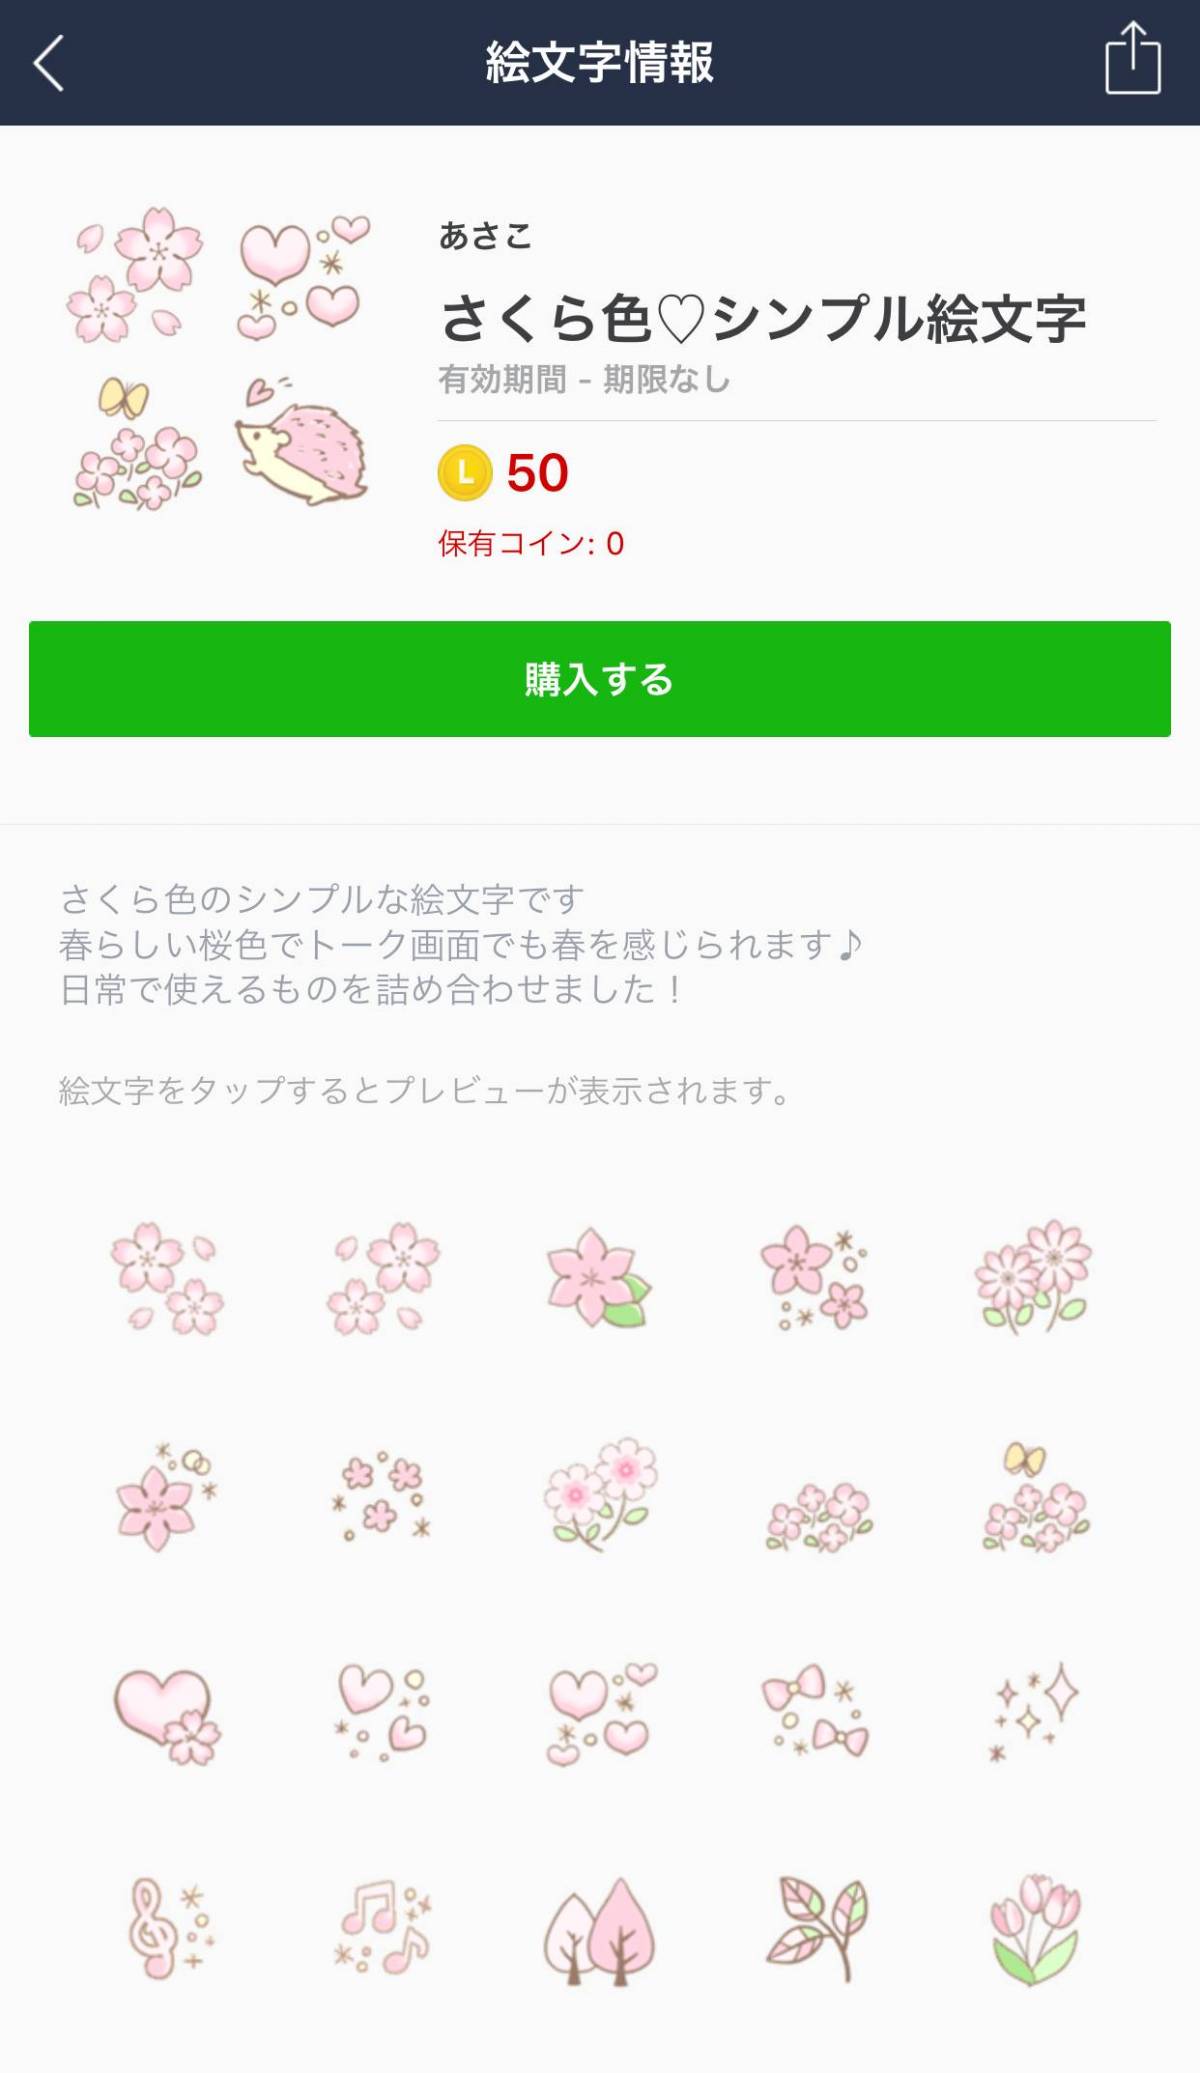 かわいい桜のlineスタンプ 絵文字12選 お花見に誘う時に使いたい Appliv Topics